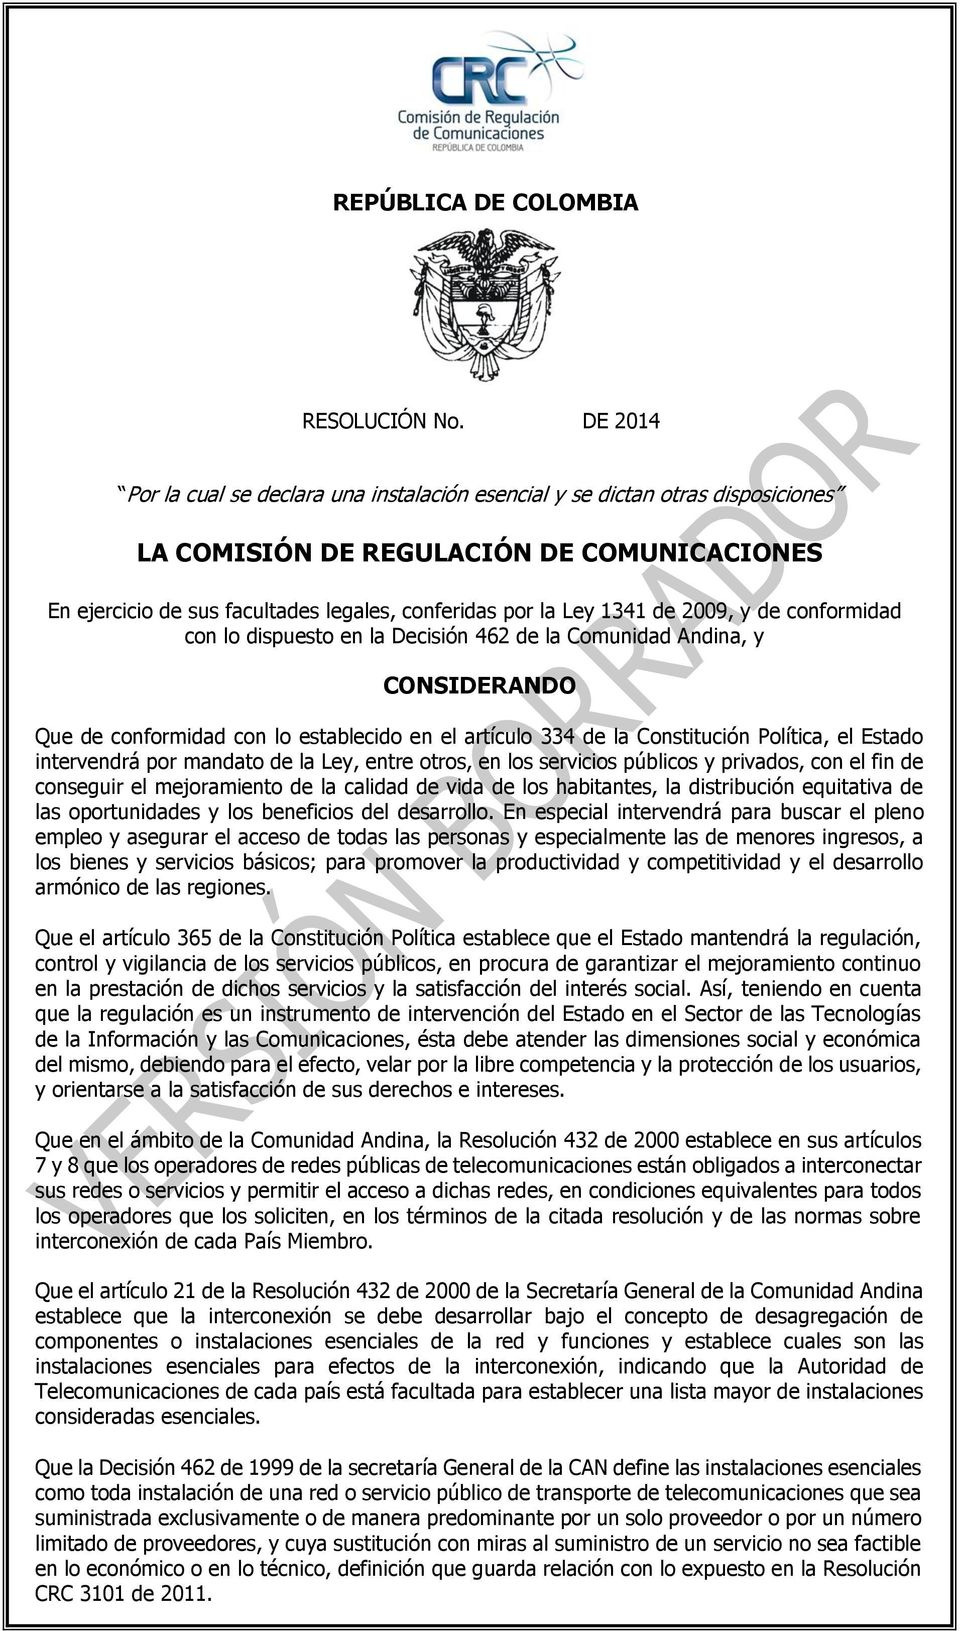 de 2009, y de conformidad con lo dispuesto en la Decisión 462 de la Comunidad Andina, y CONSIDERANDO Que de conformidad con lo establecido en el artículo 334 de la Constitución Política, el Estado